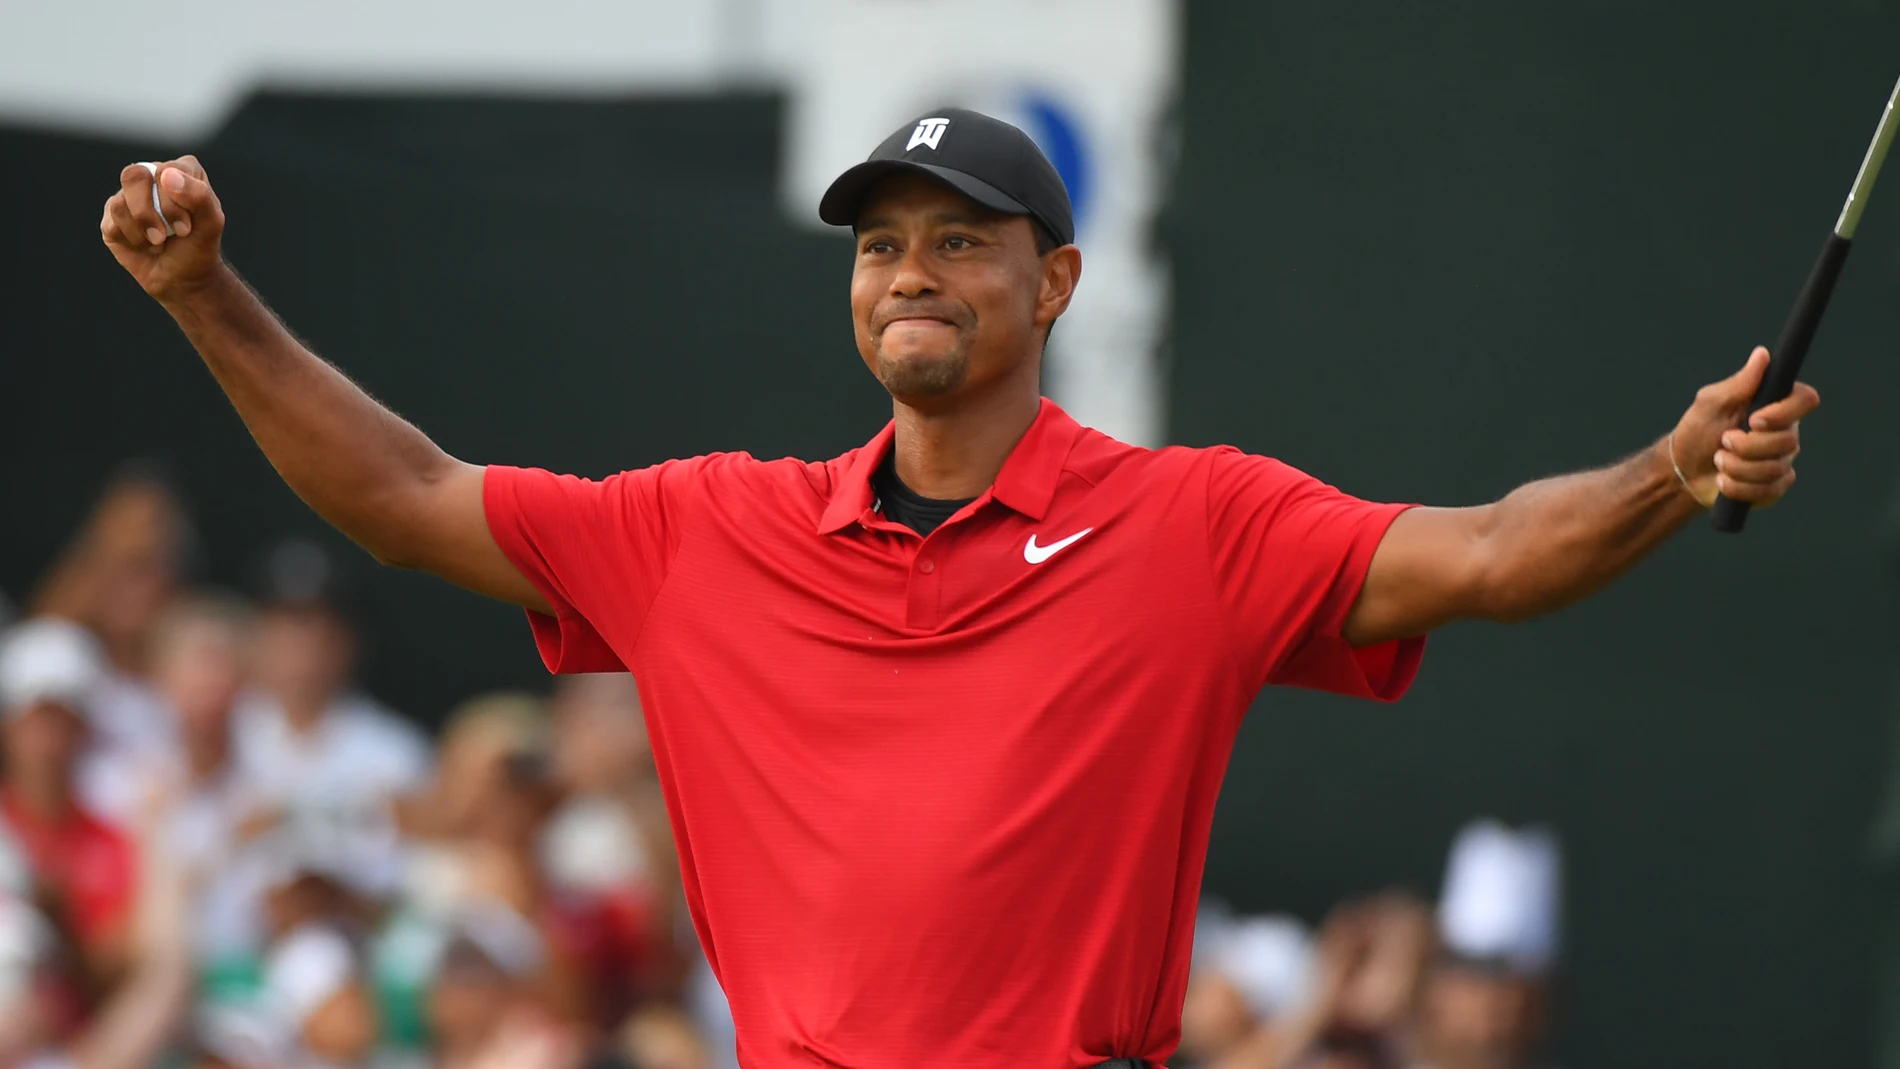 Tiger Woods alza los brazos tras su victoria en el Tour Championship